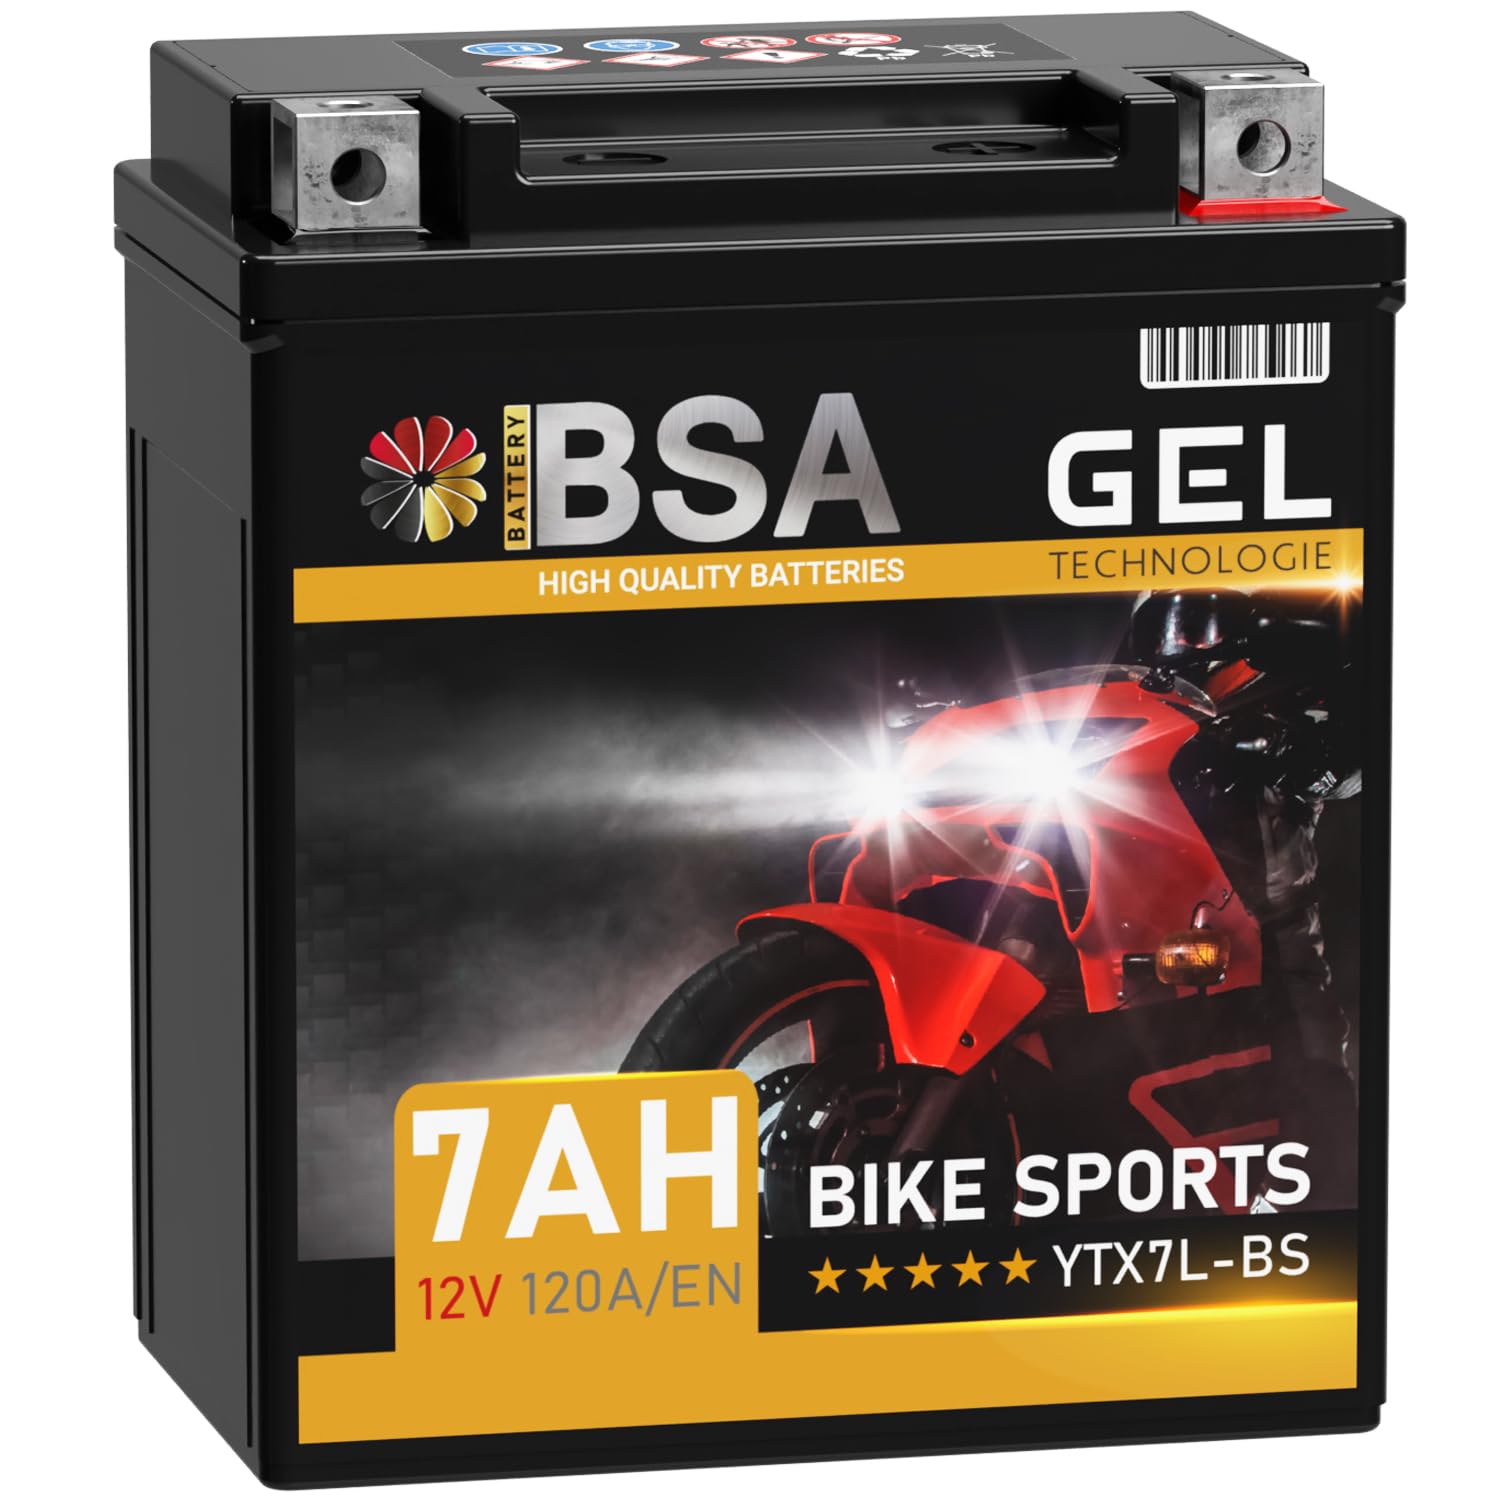 BSA YTX7L-BS GEL Roller Batterie 12V 7Ah 120A/EN Motorradbatterie doppelte Lebensdauer entspricht 50614 CTX7L-BS vorgeladen auslaufsicher wartungsfrei ersetzt 6Ah